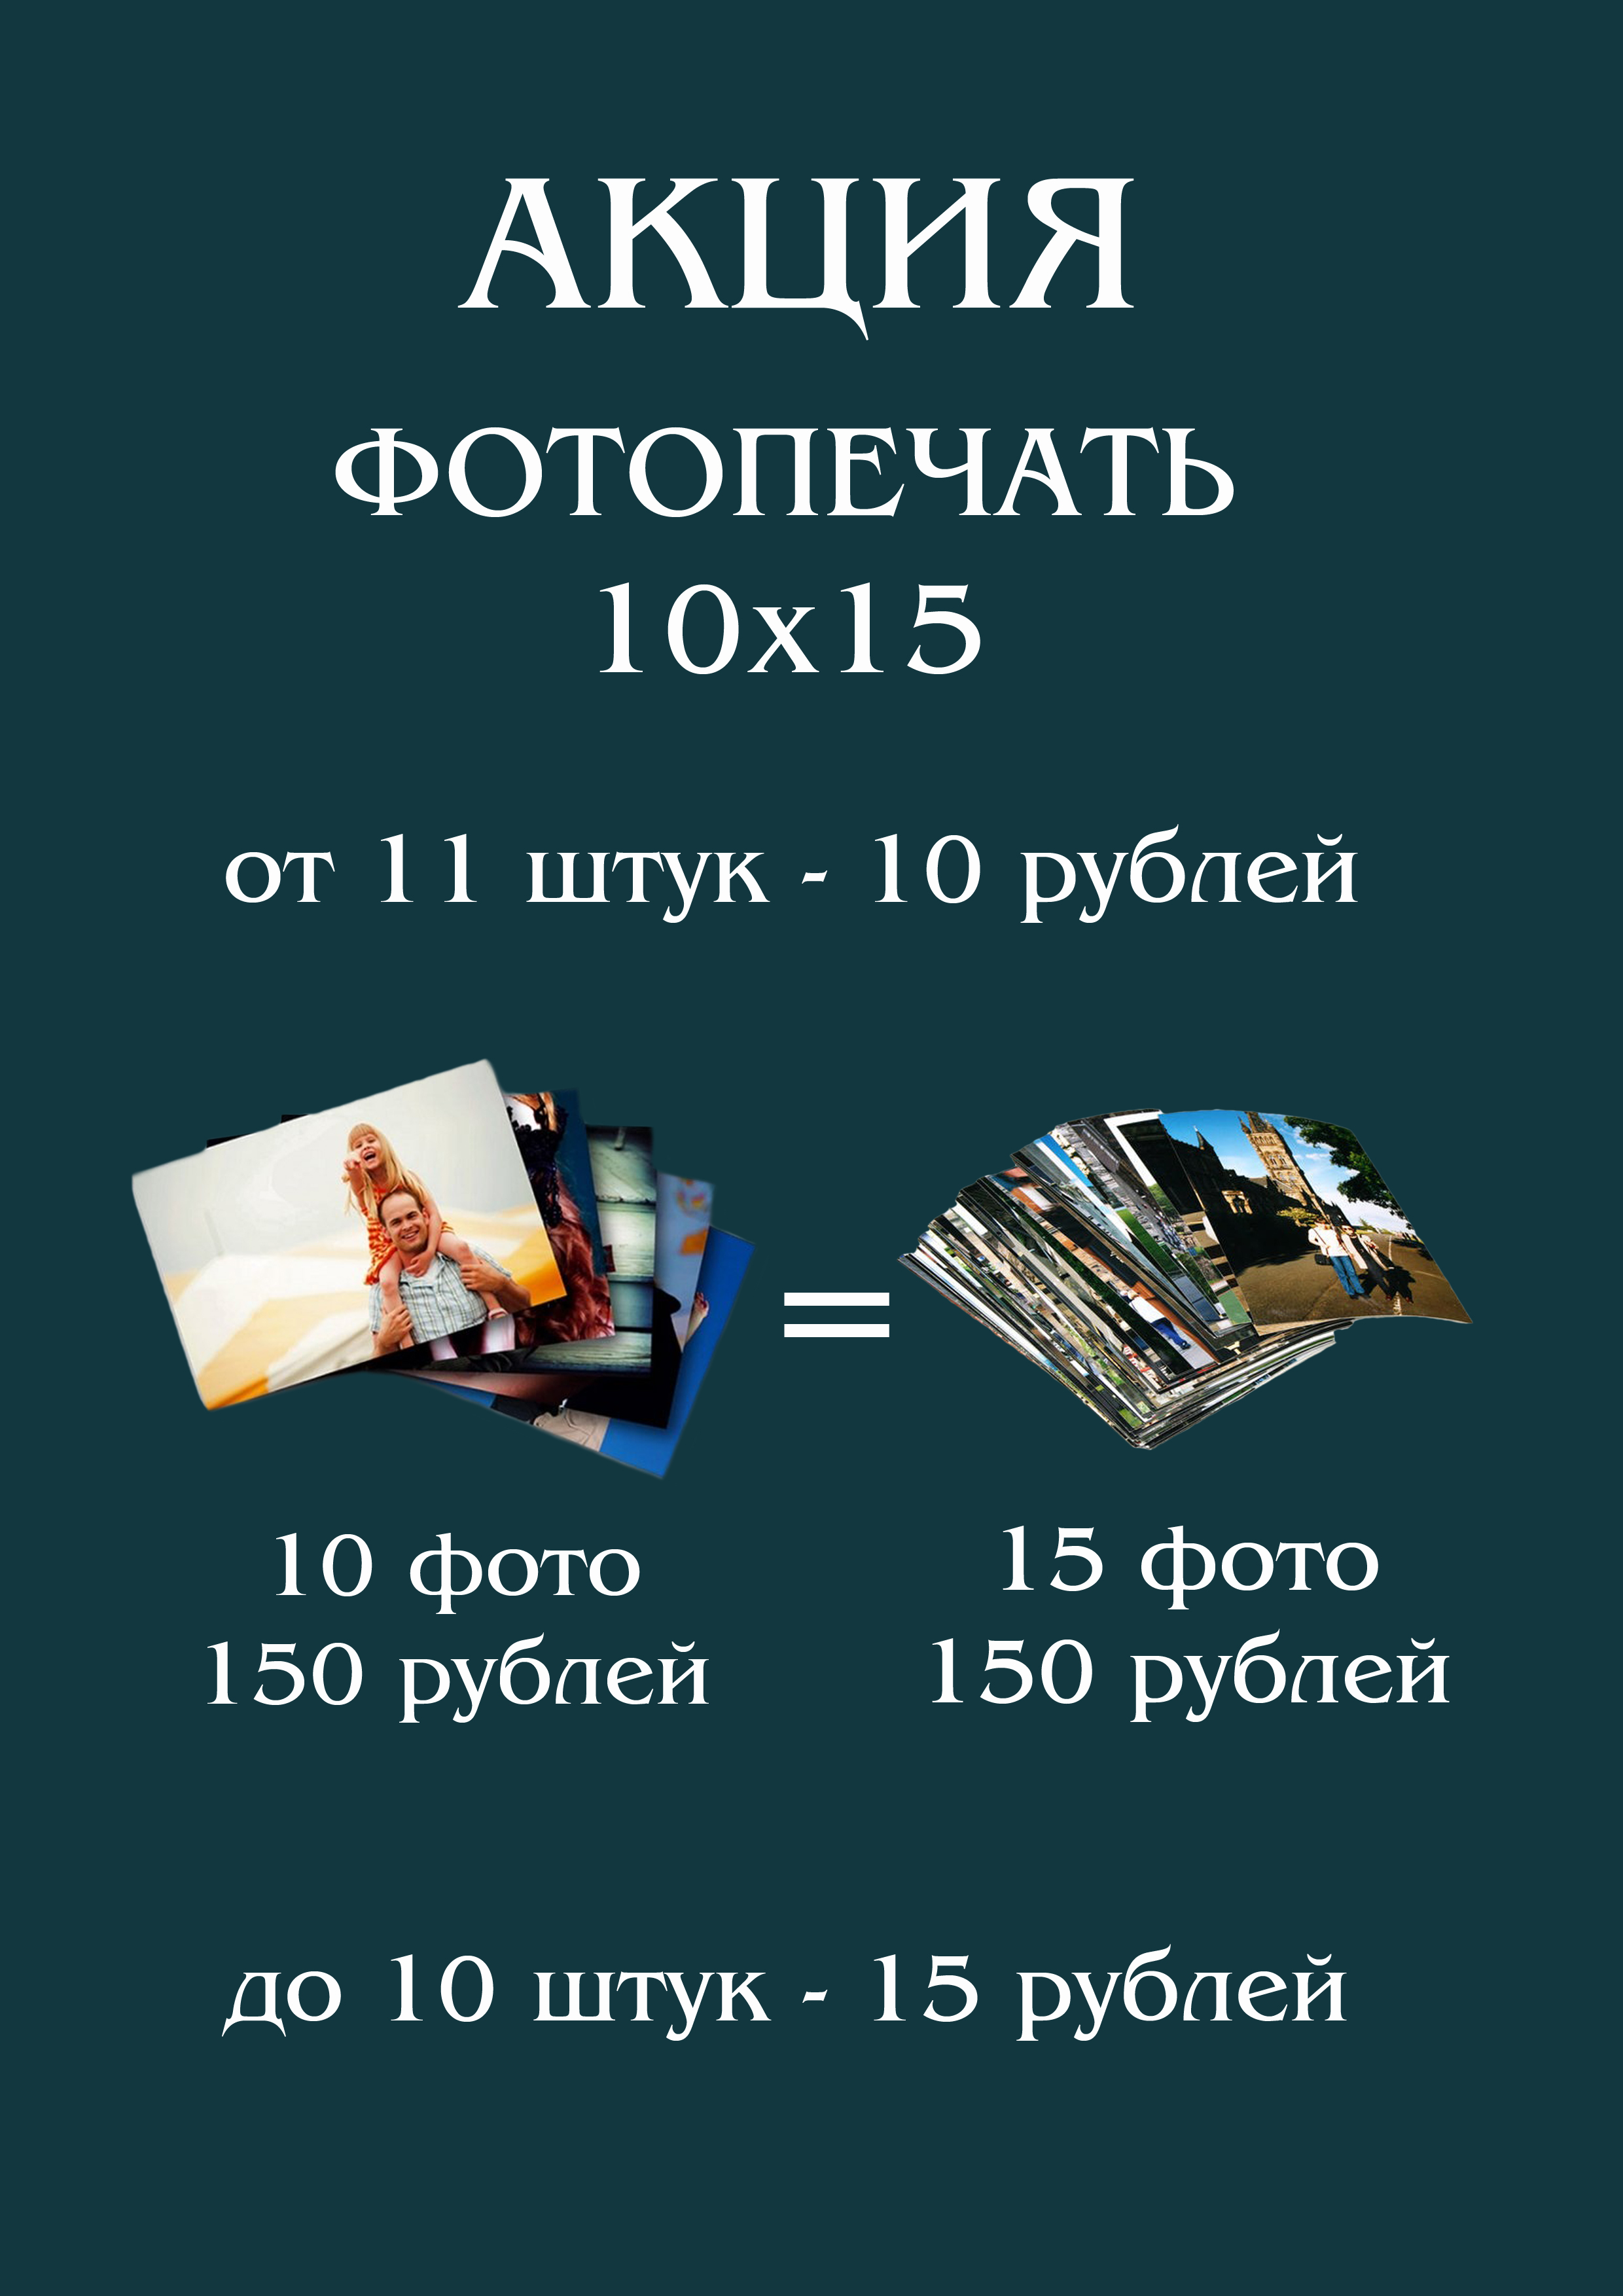 Акция на печать фотографий 10х15